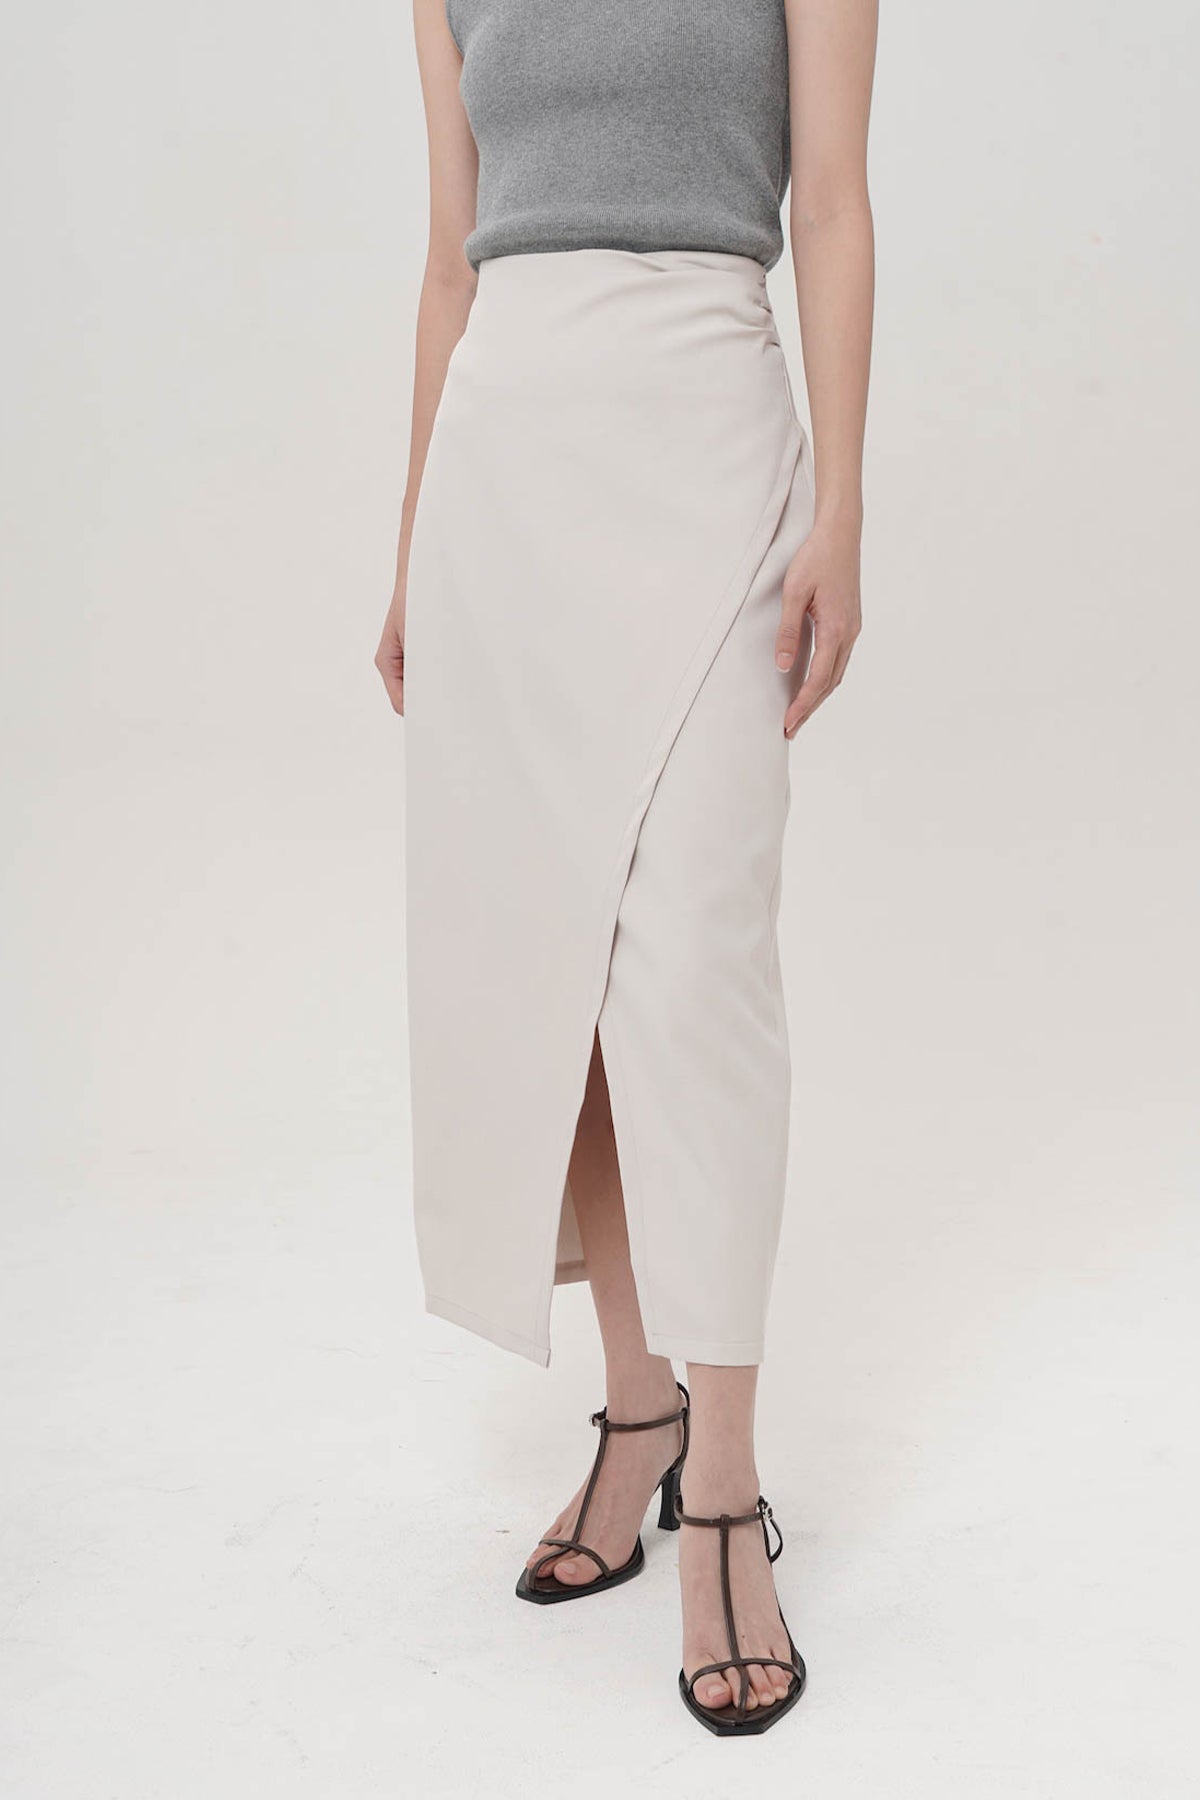 Zamora Midi Skirt In White-Sage